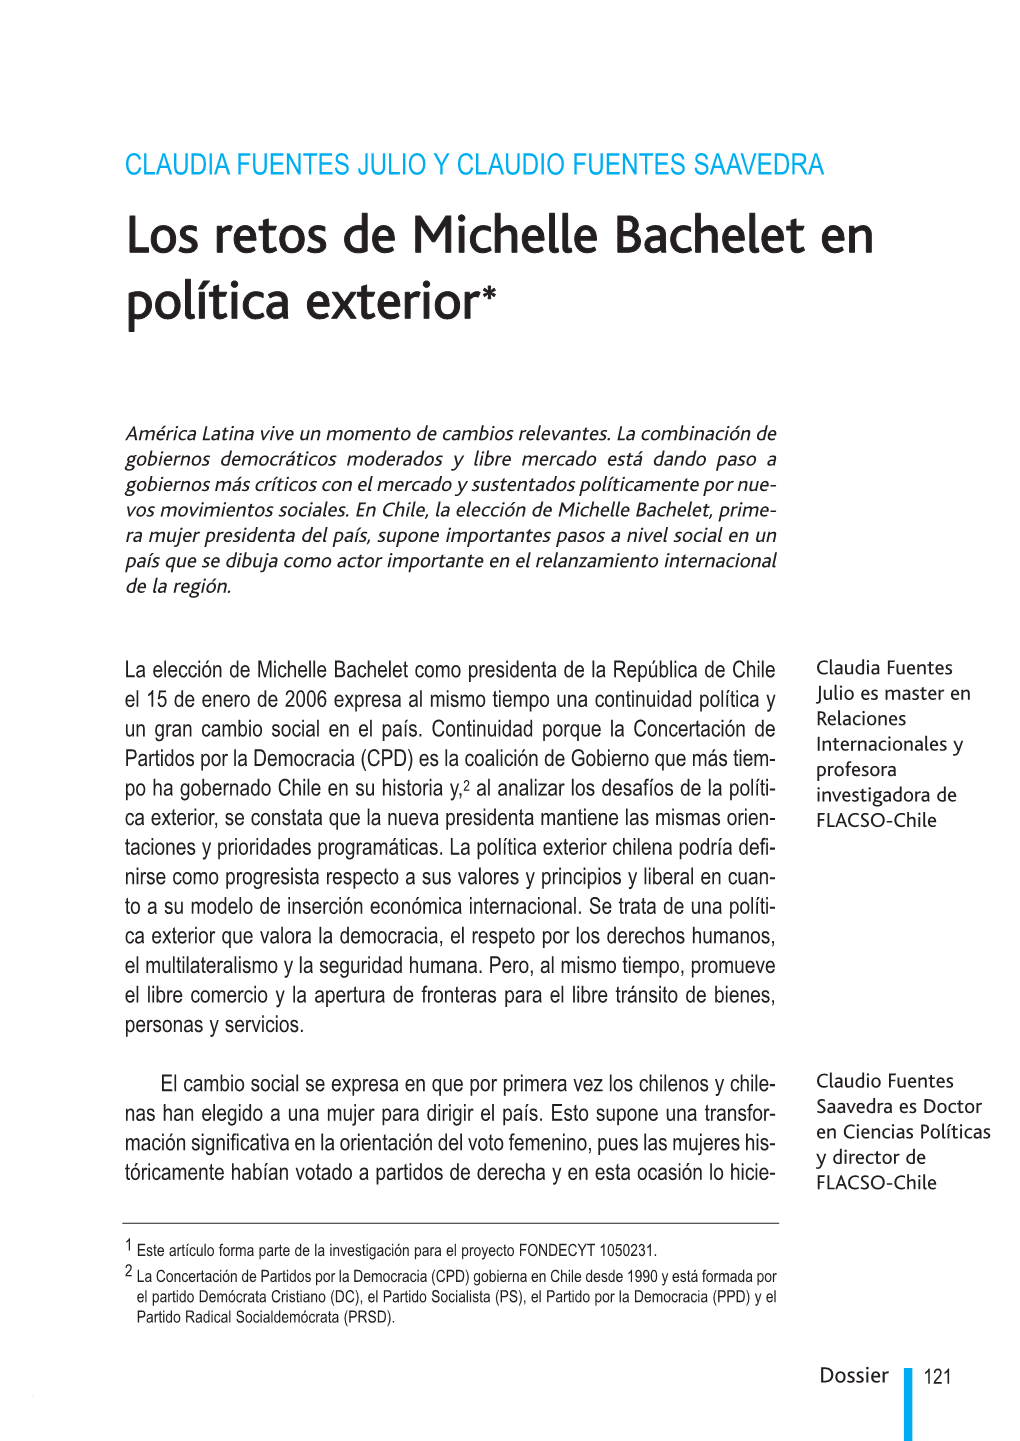 Los Retos De Michelle Bachelet En Política Exterior*